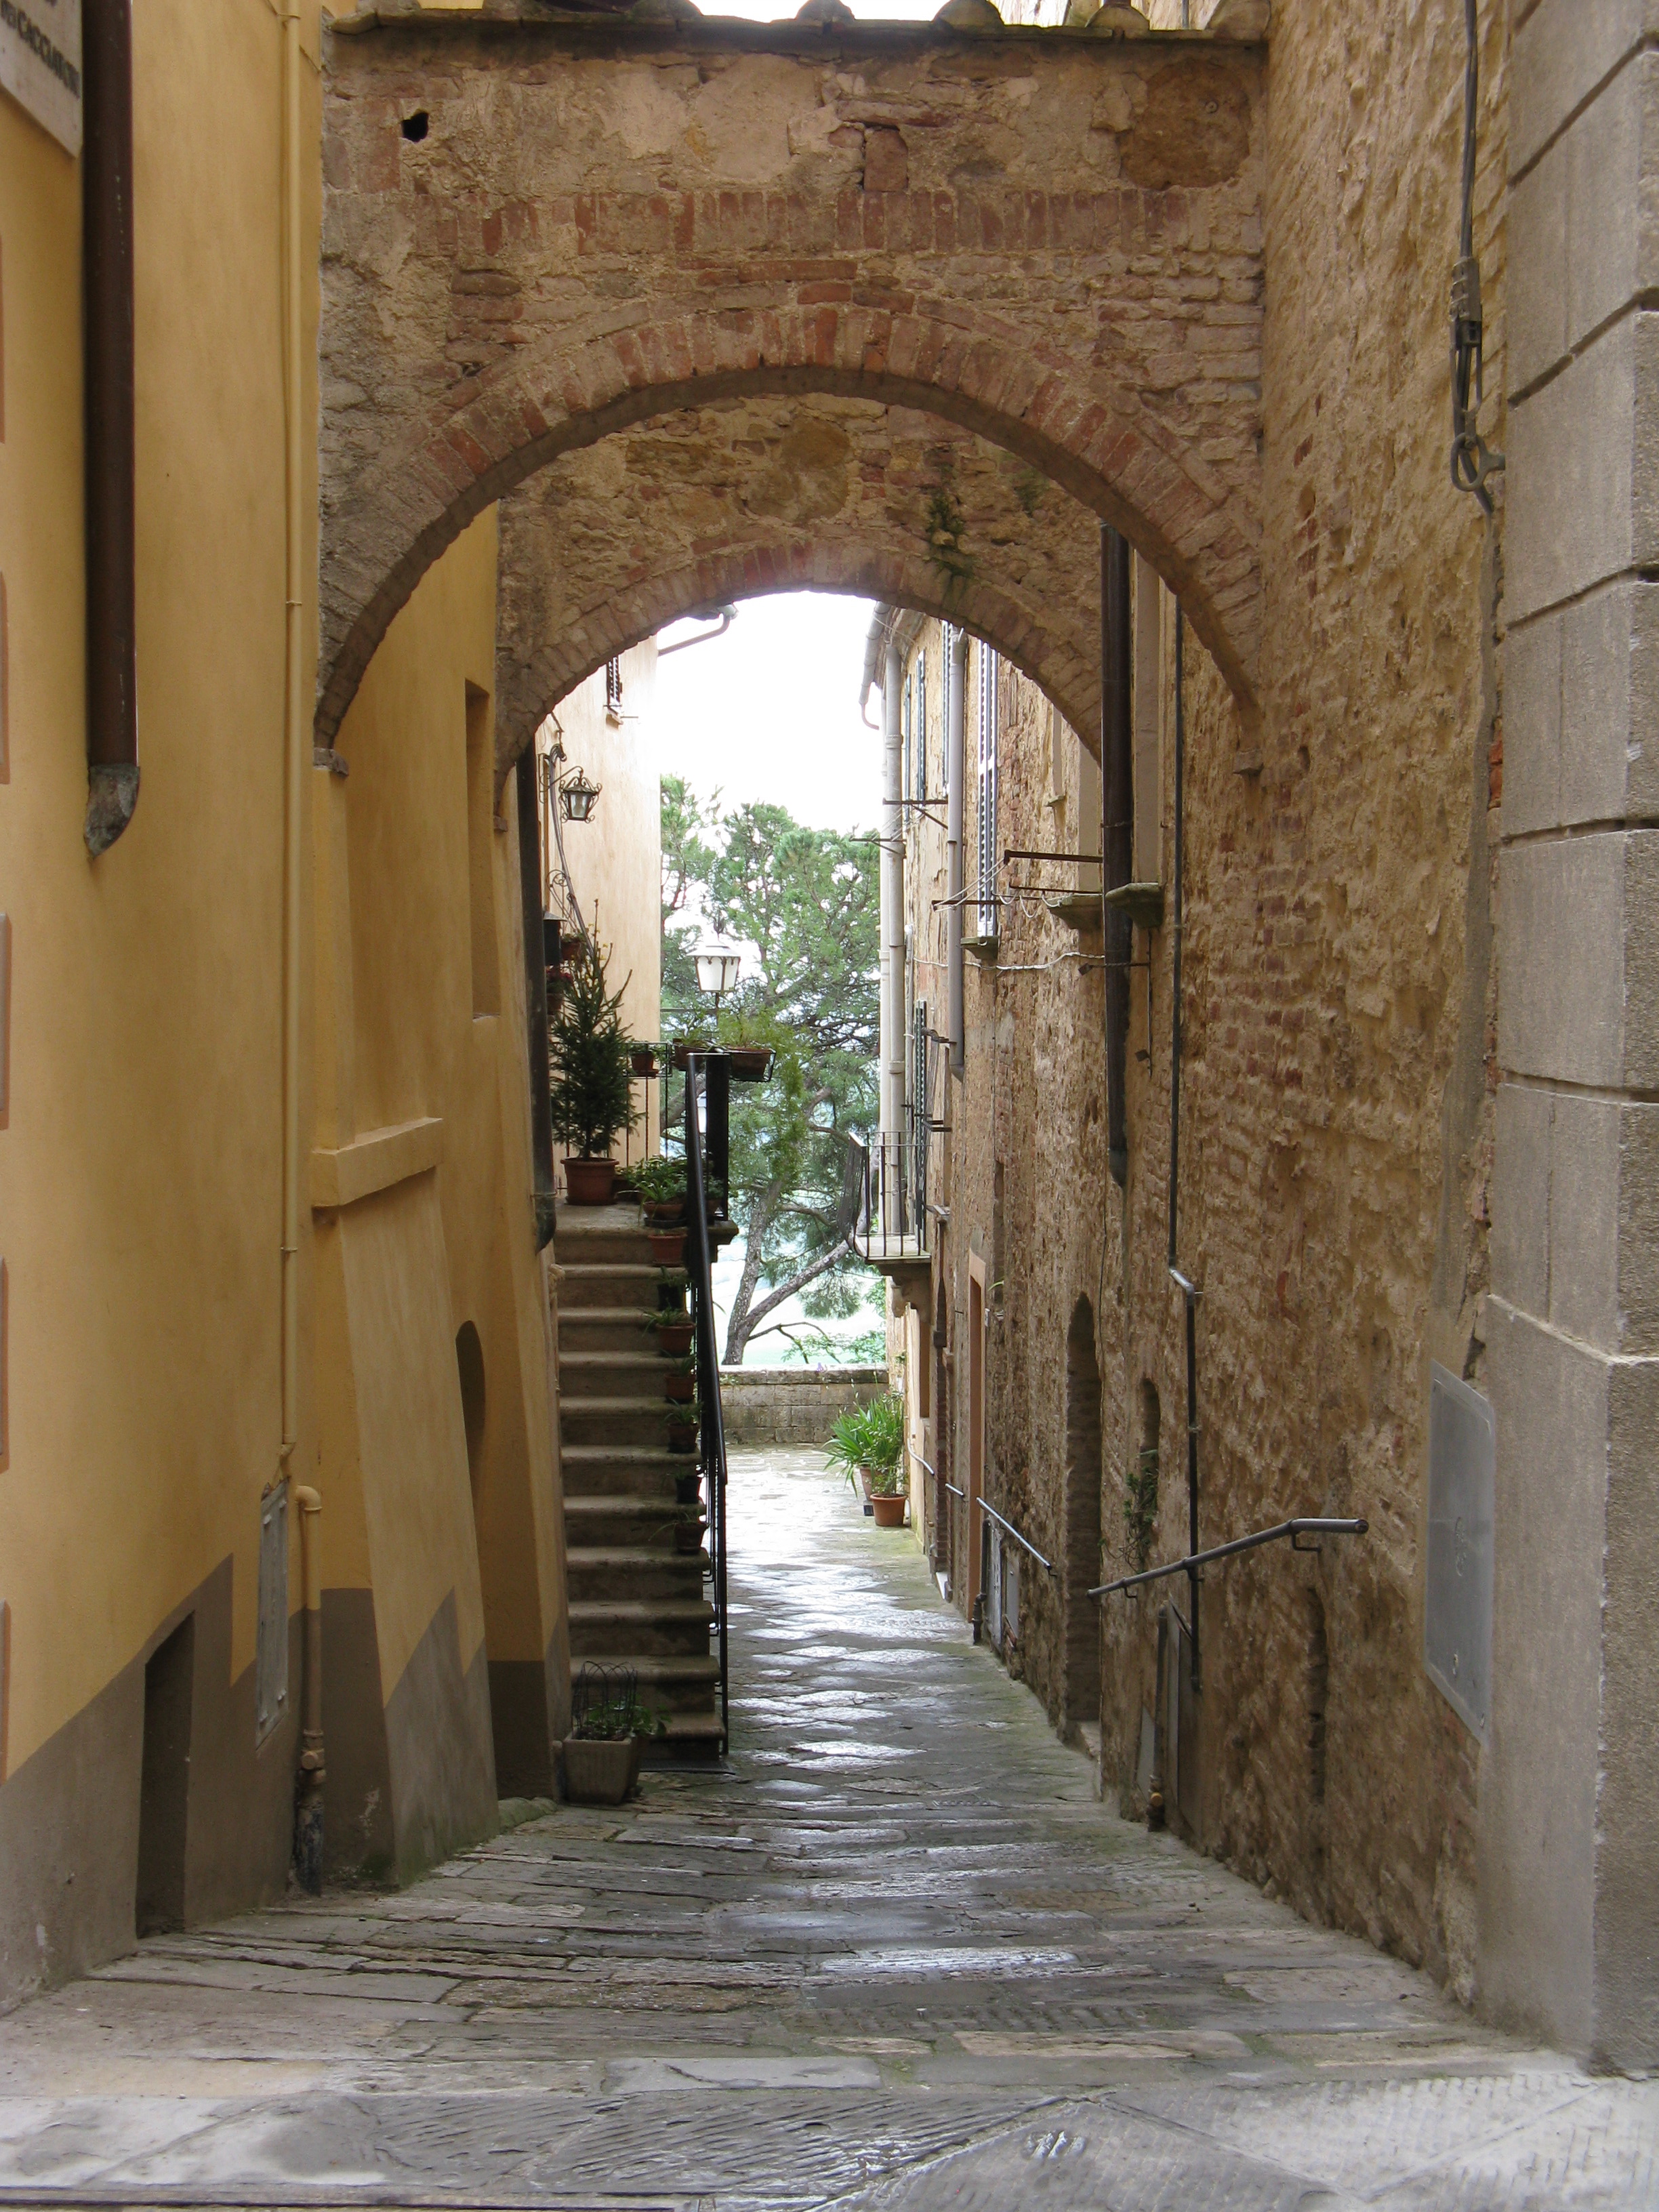 Exploring a narrow alley in Montepulciano